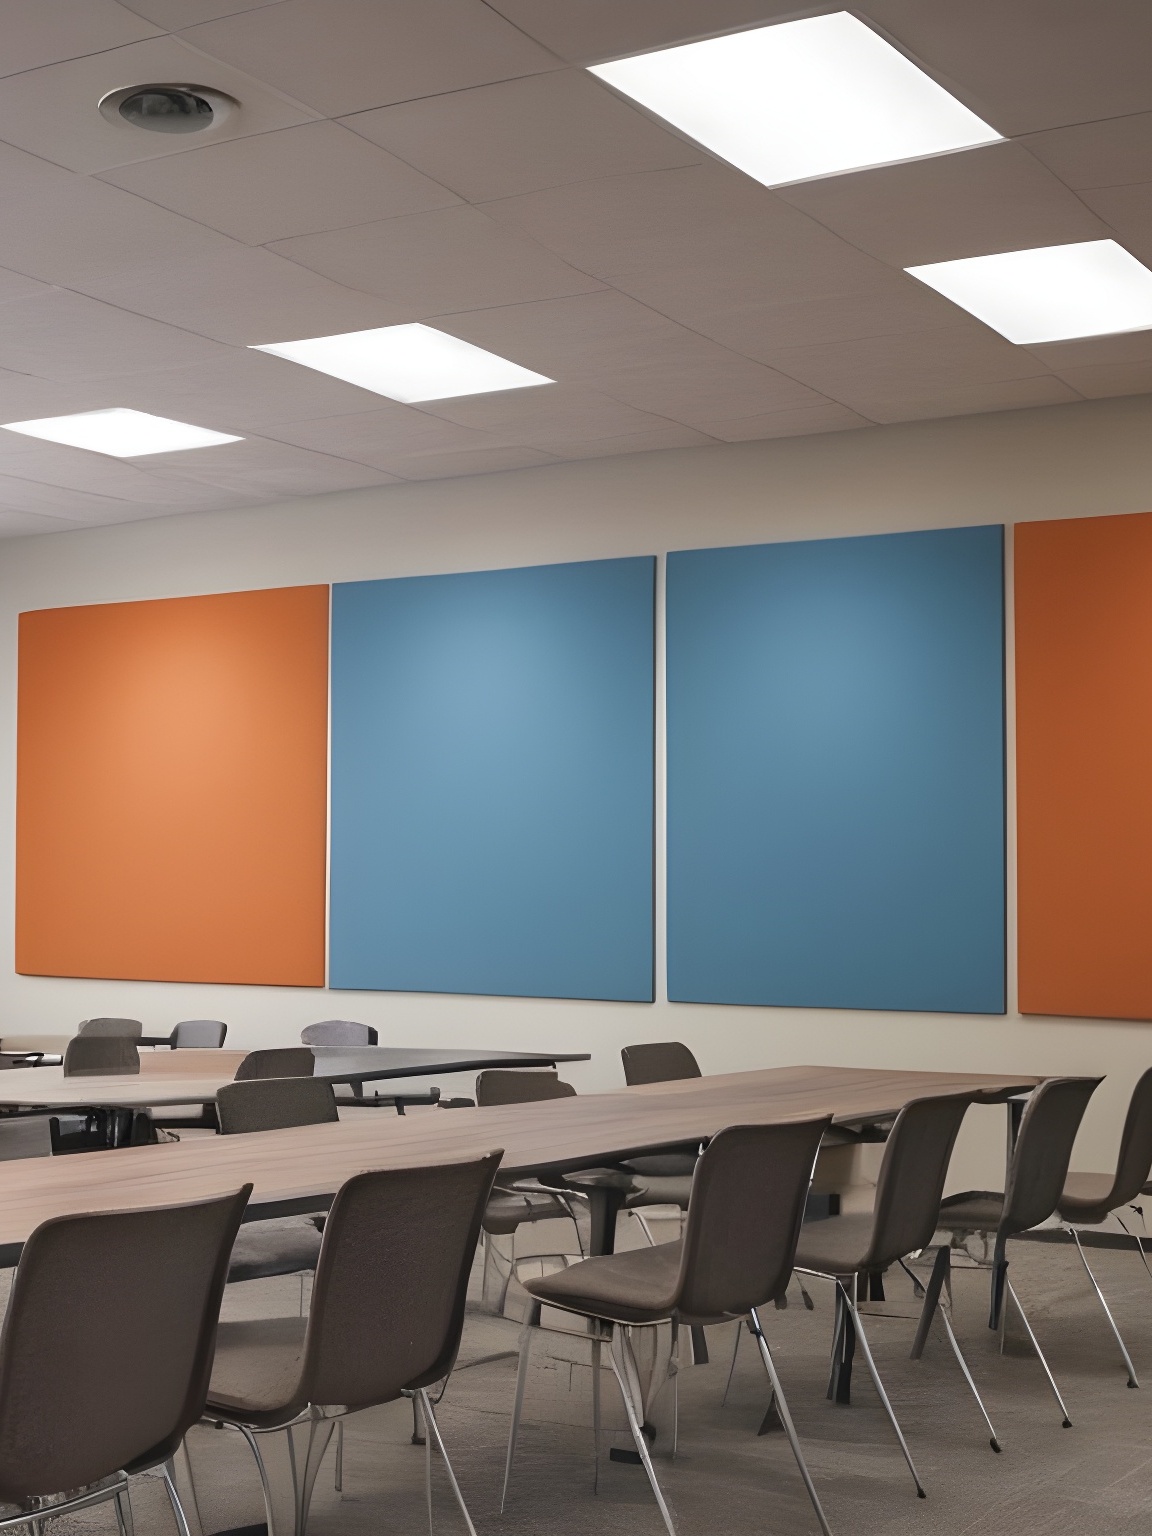 さまざまな色のグラスファイバーパネル吸音天井と壁の吸音パネルを使用したインテリアシーンの写真_副本nwx